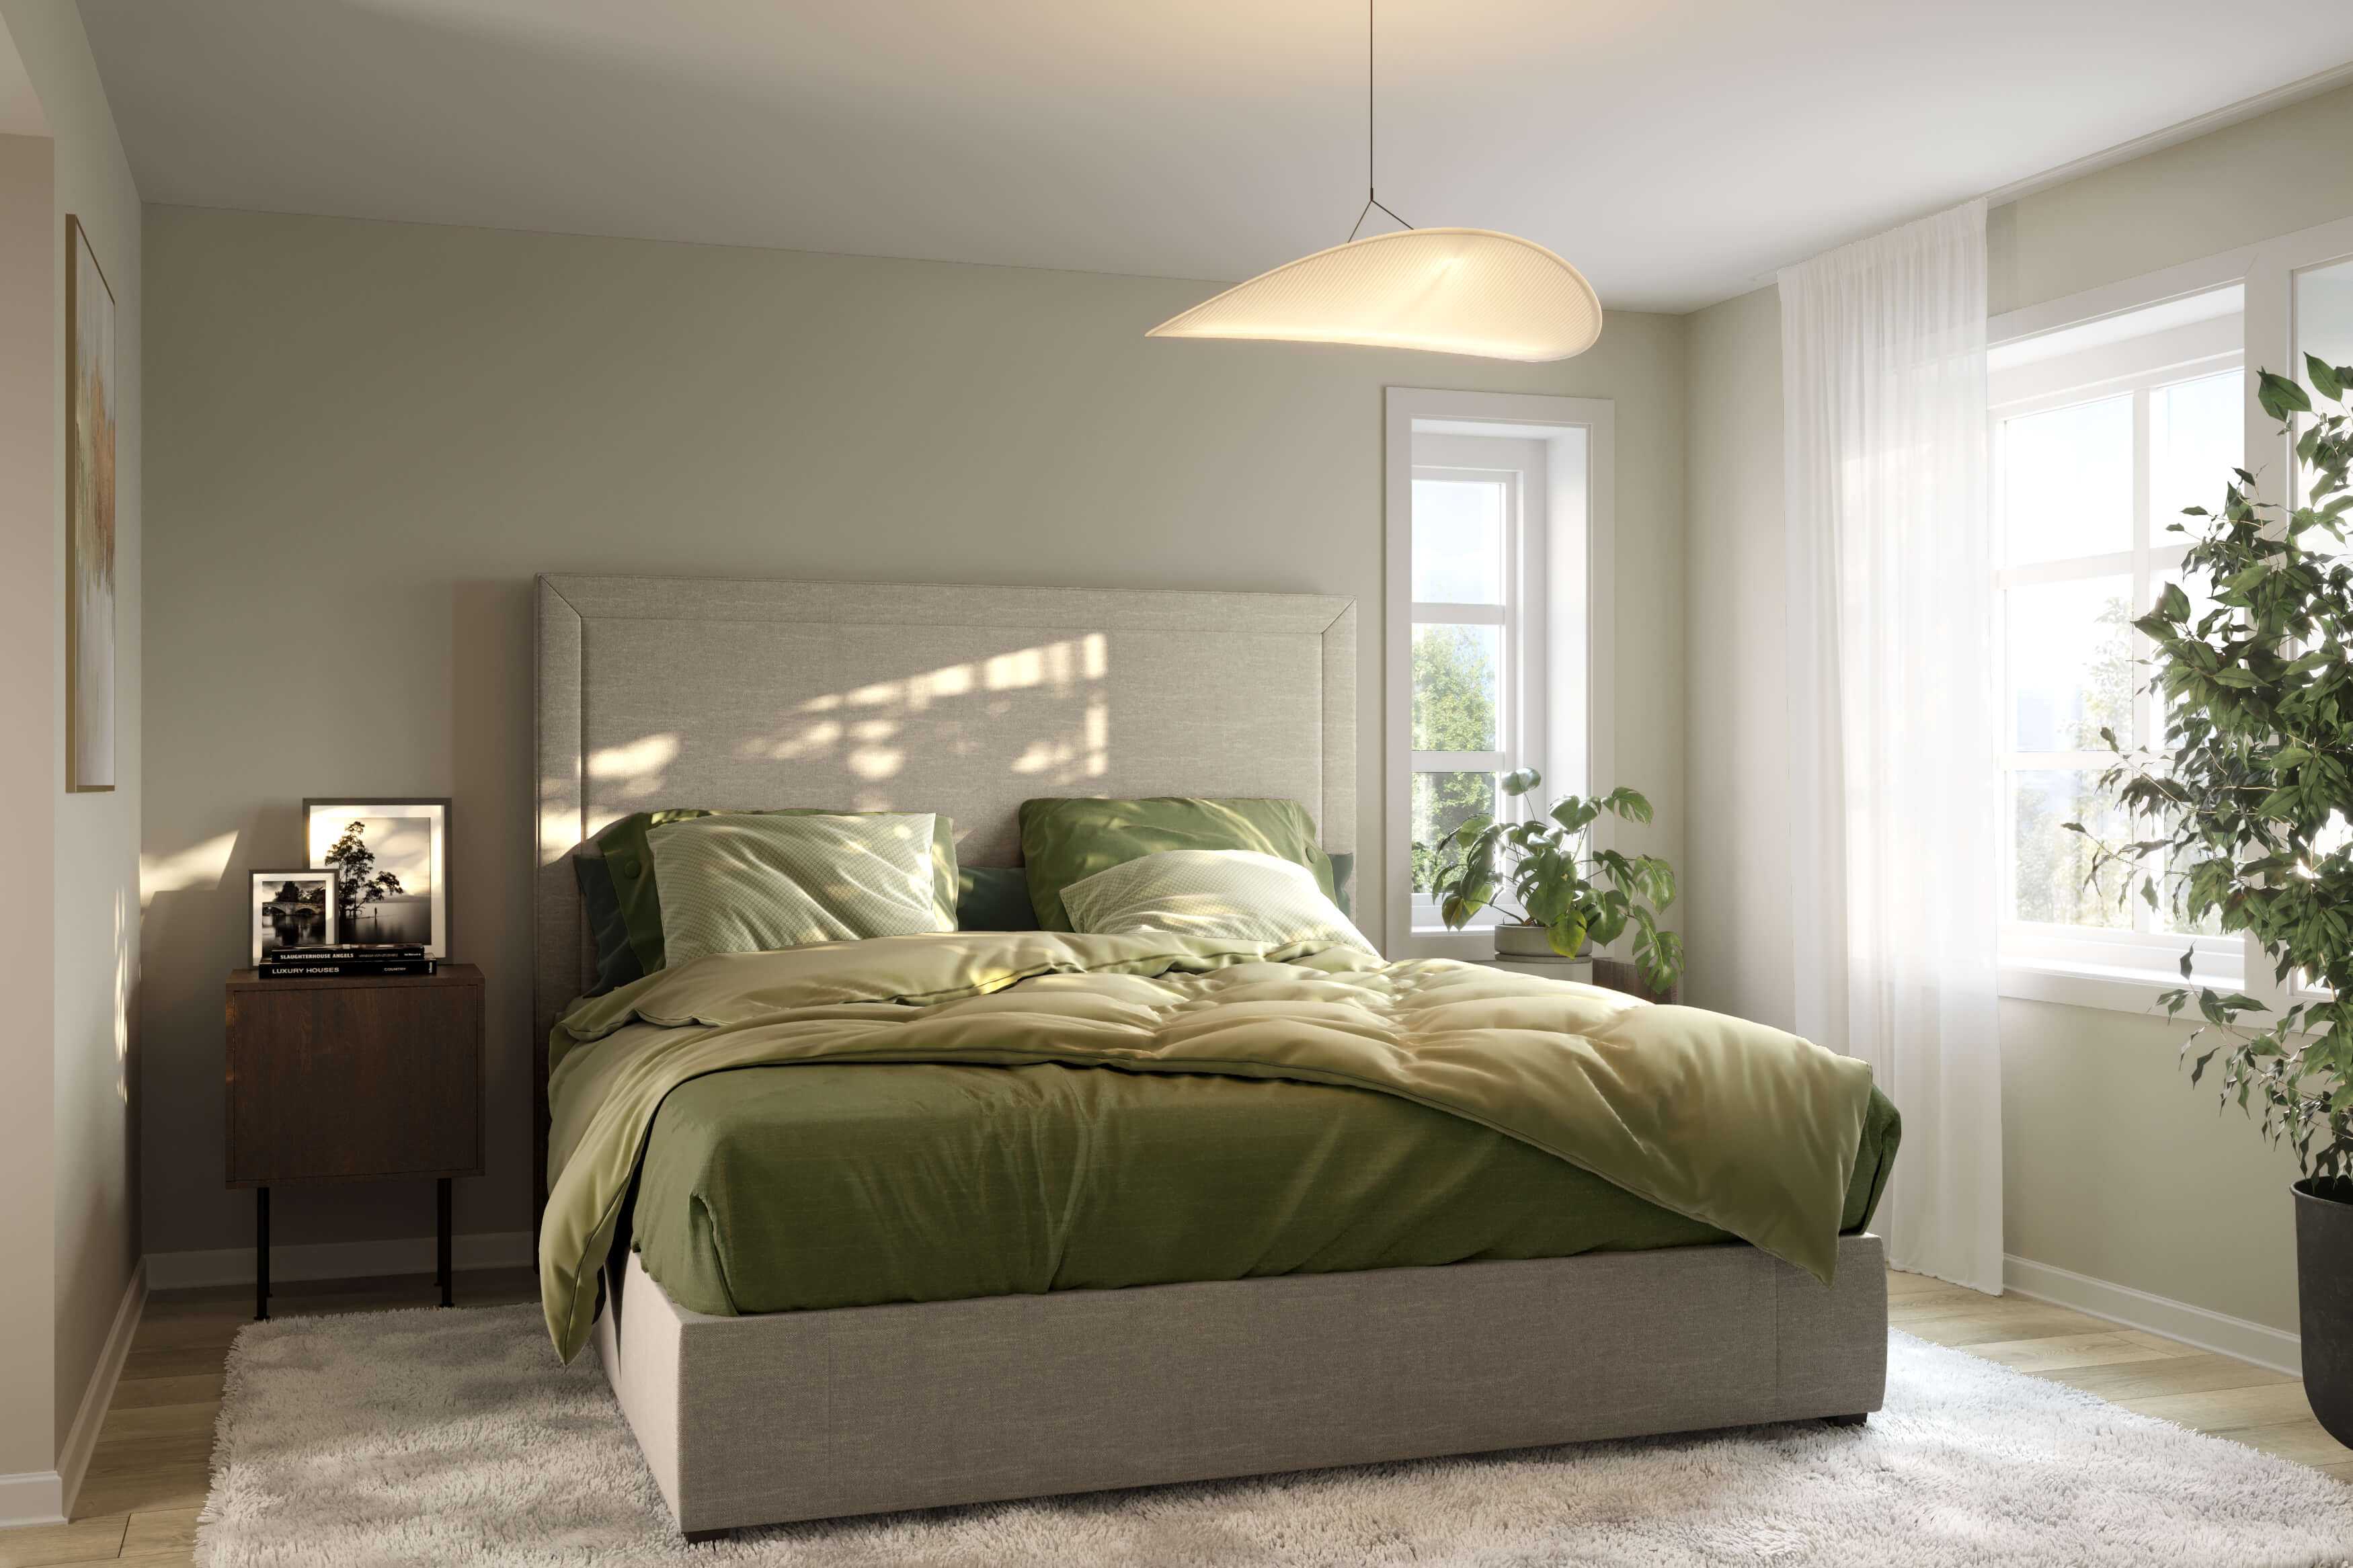 Hovedsoverommet i husmodellen Adele fra ABChus med flott grønt sengetøy som gjør rommet lunt og godt